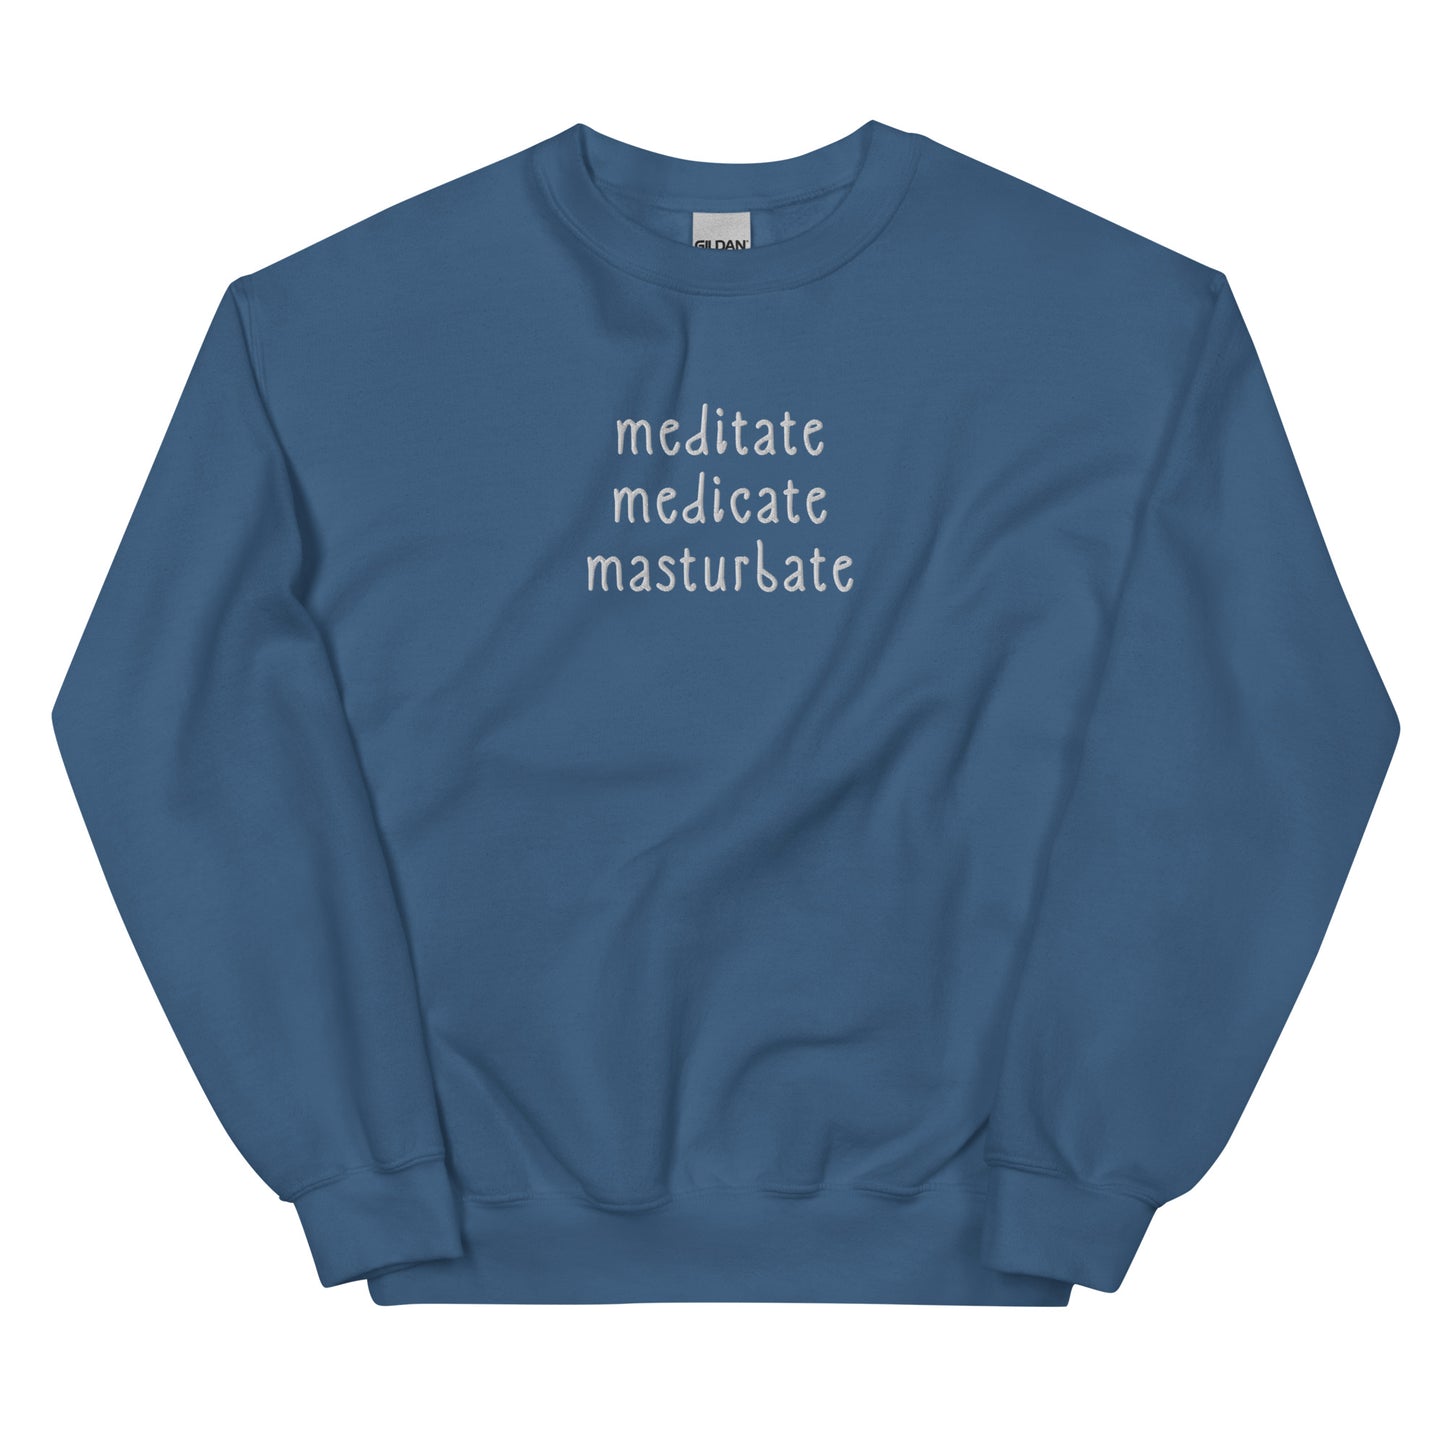 Meditate, Medicate, Masturbate (Embroidered) Unisex Sweatshirt